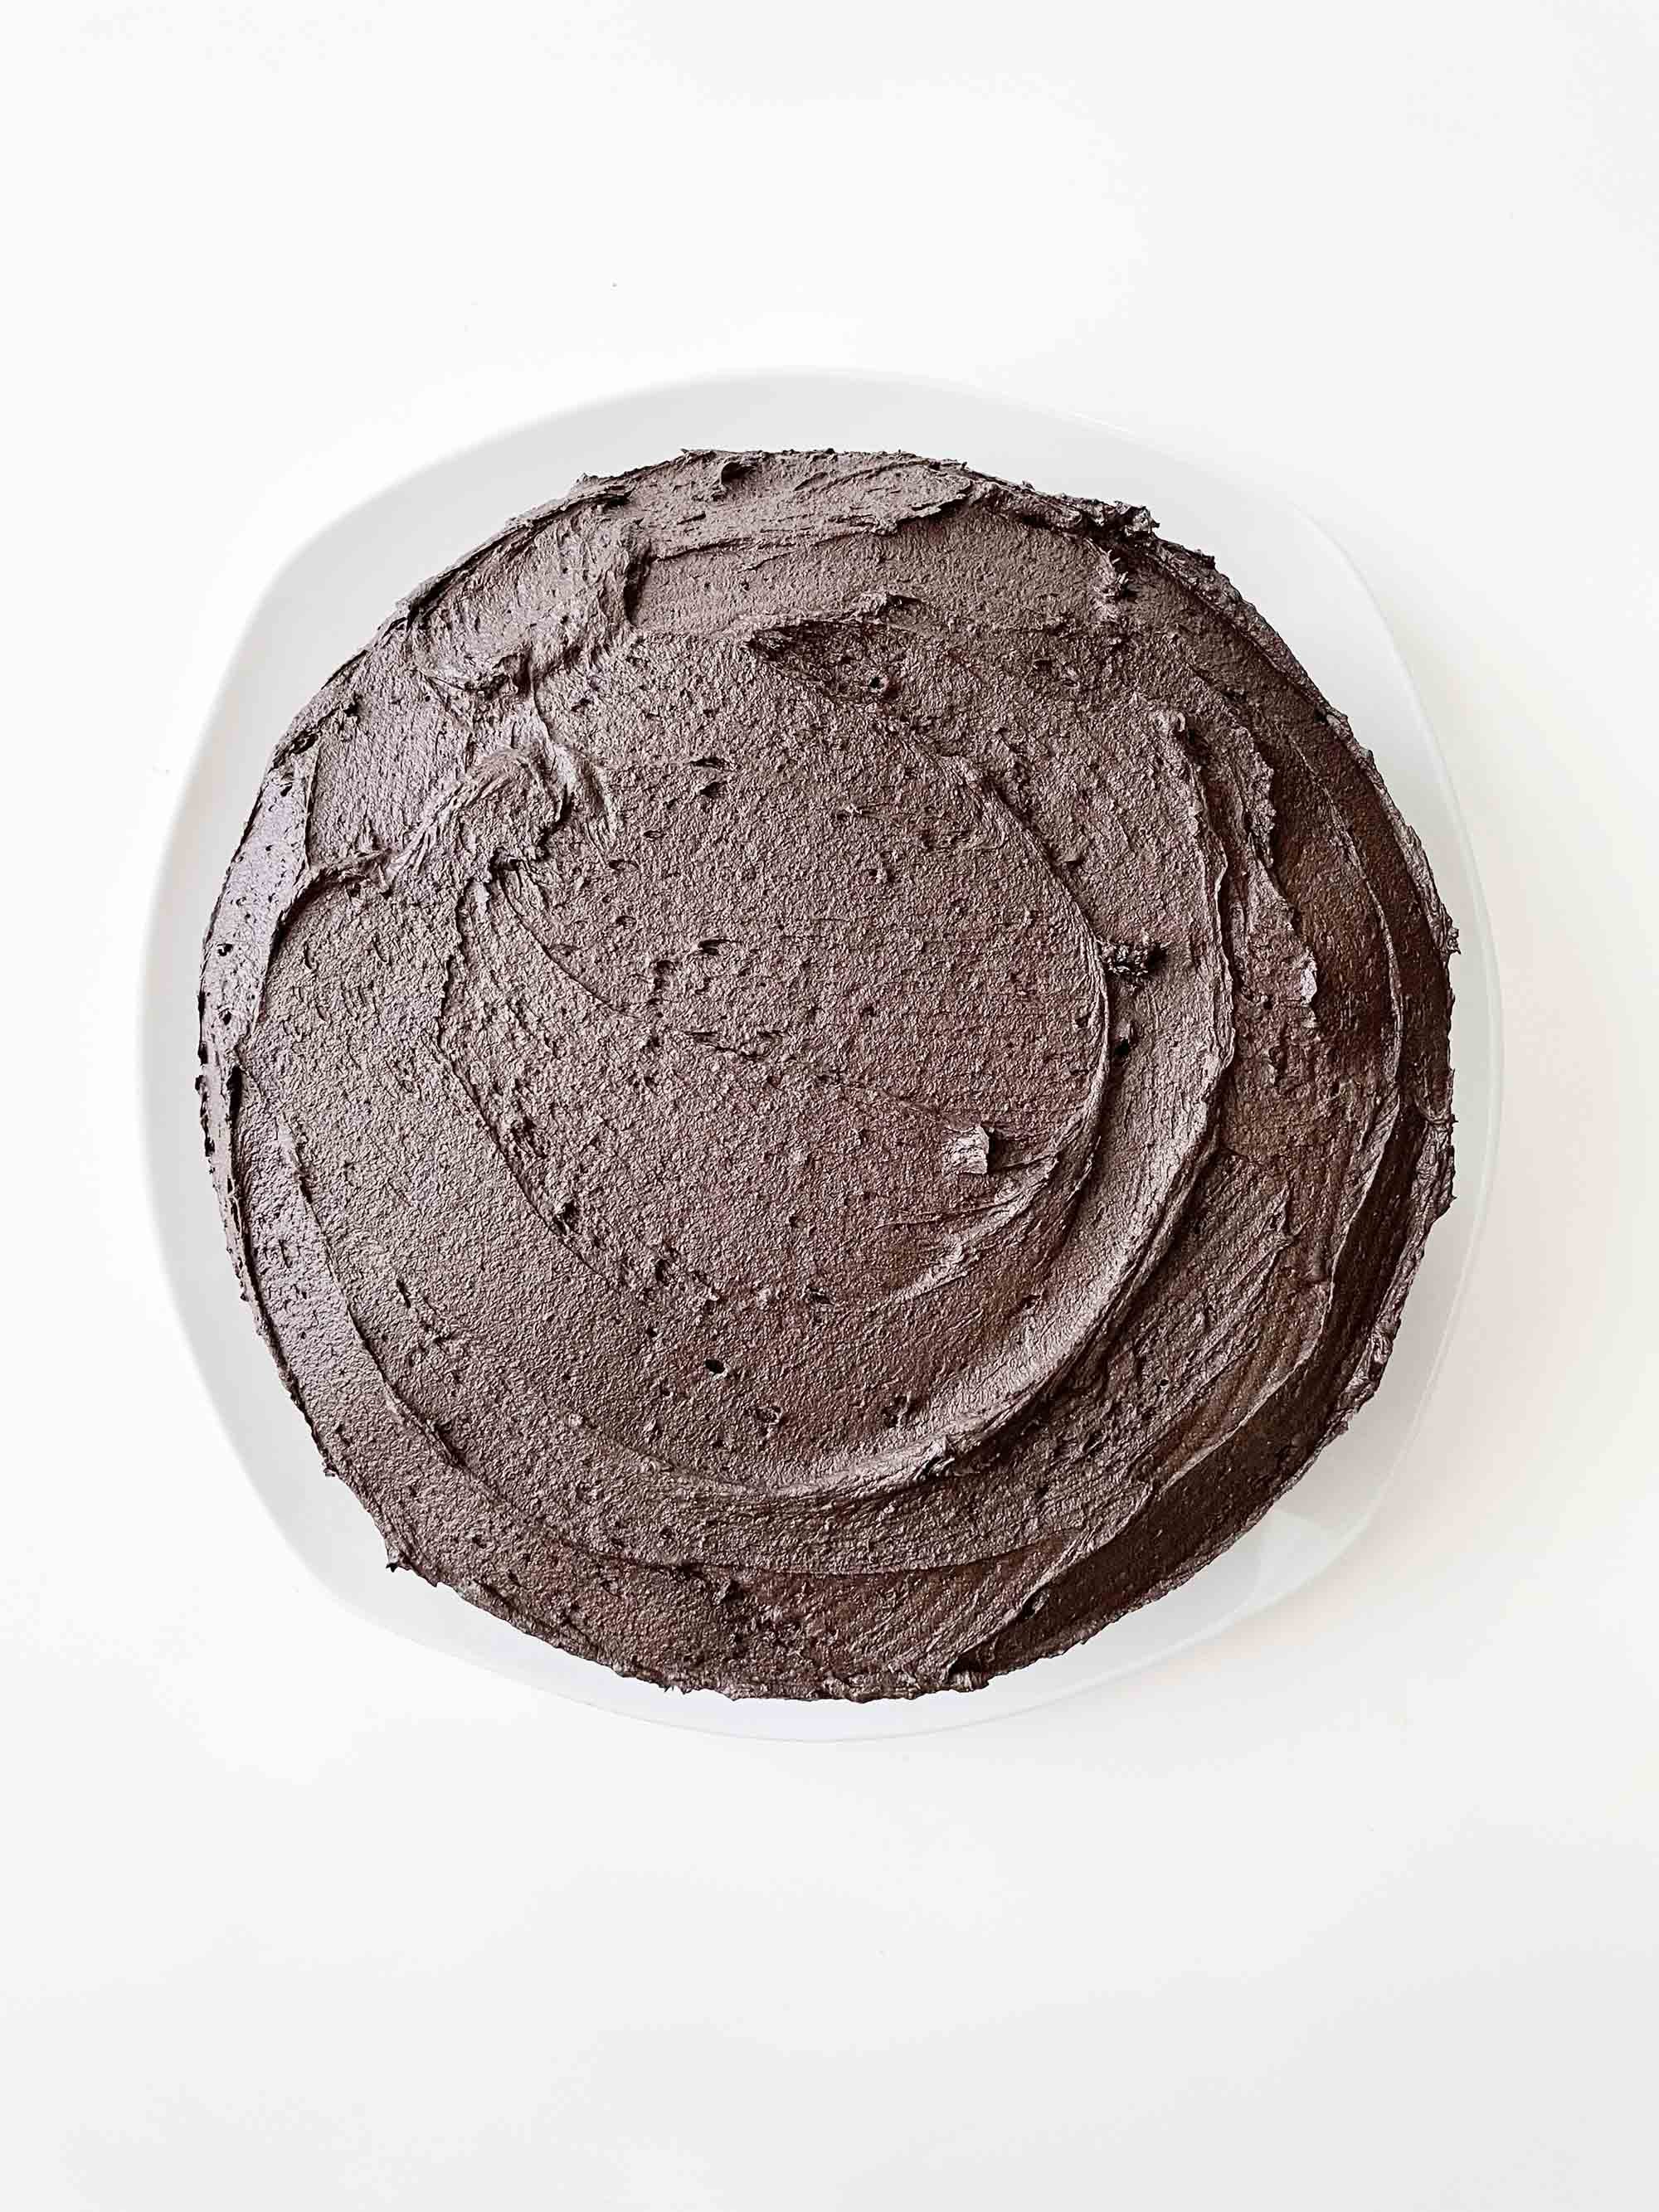 black-velvet-cake8.jpg